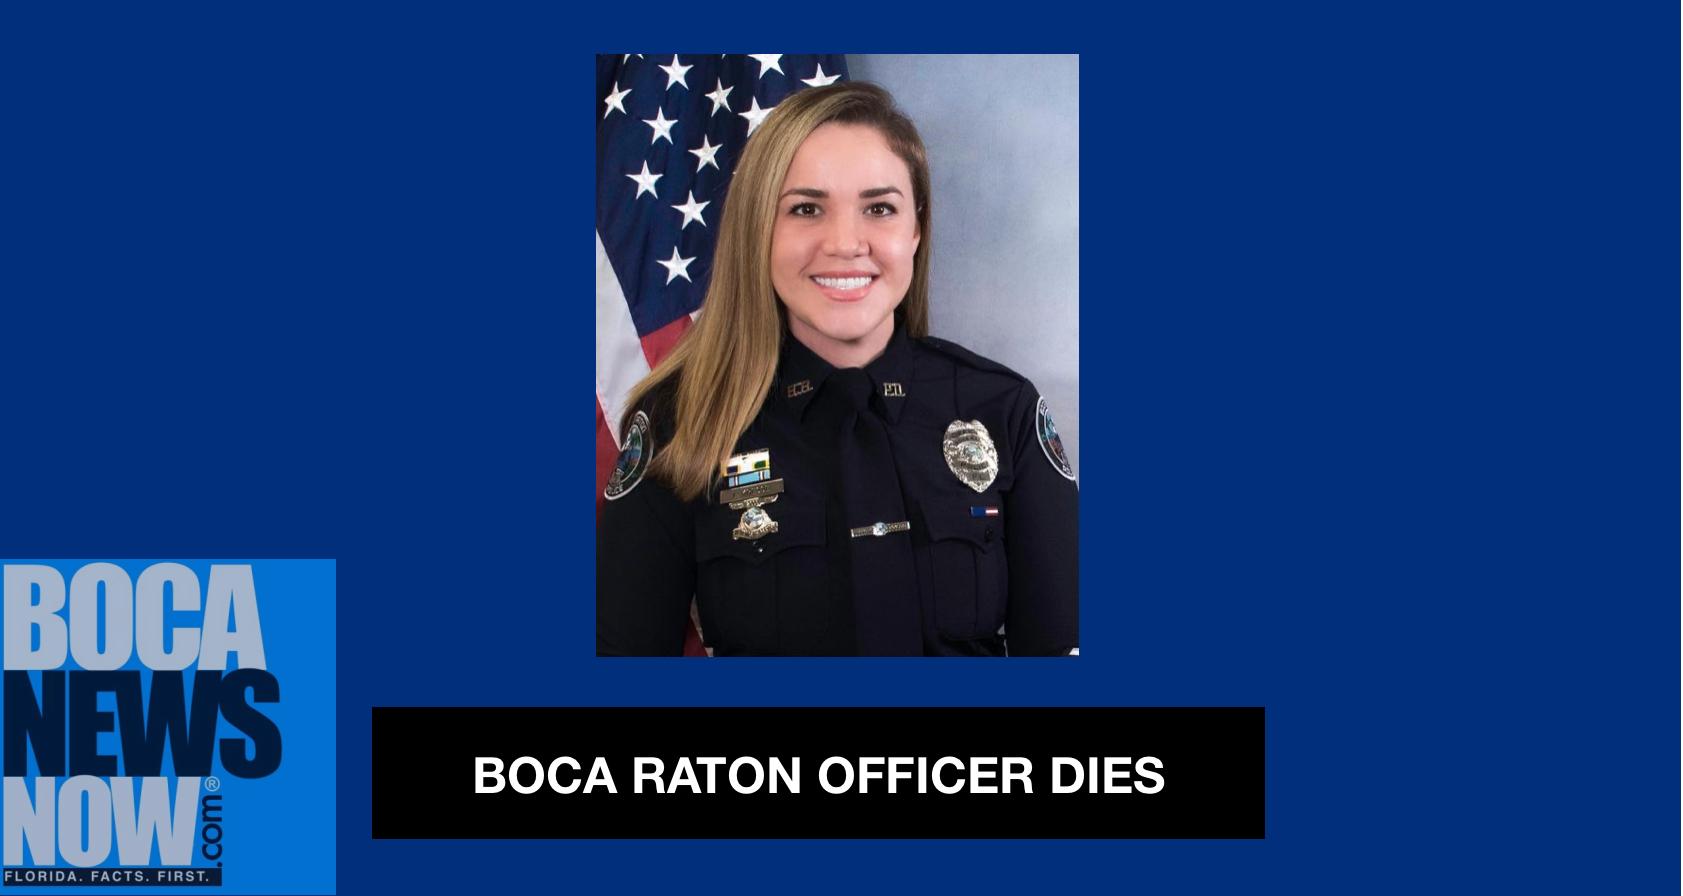 Boca Raton Officer Lauren Kresse